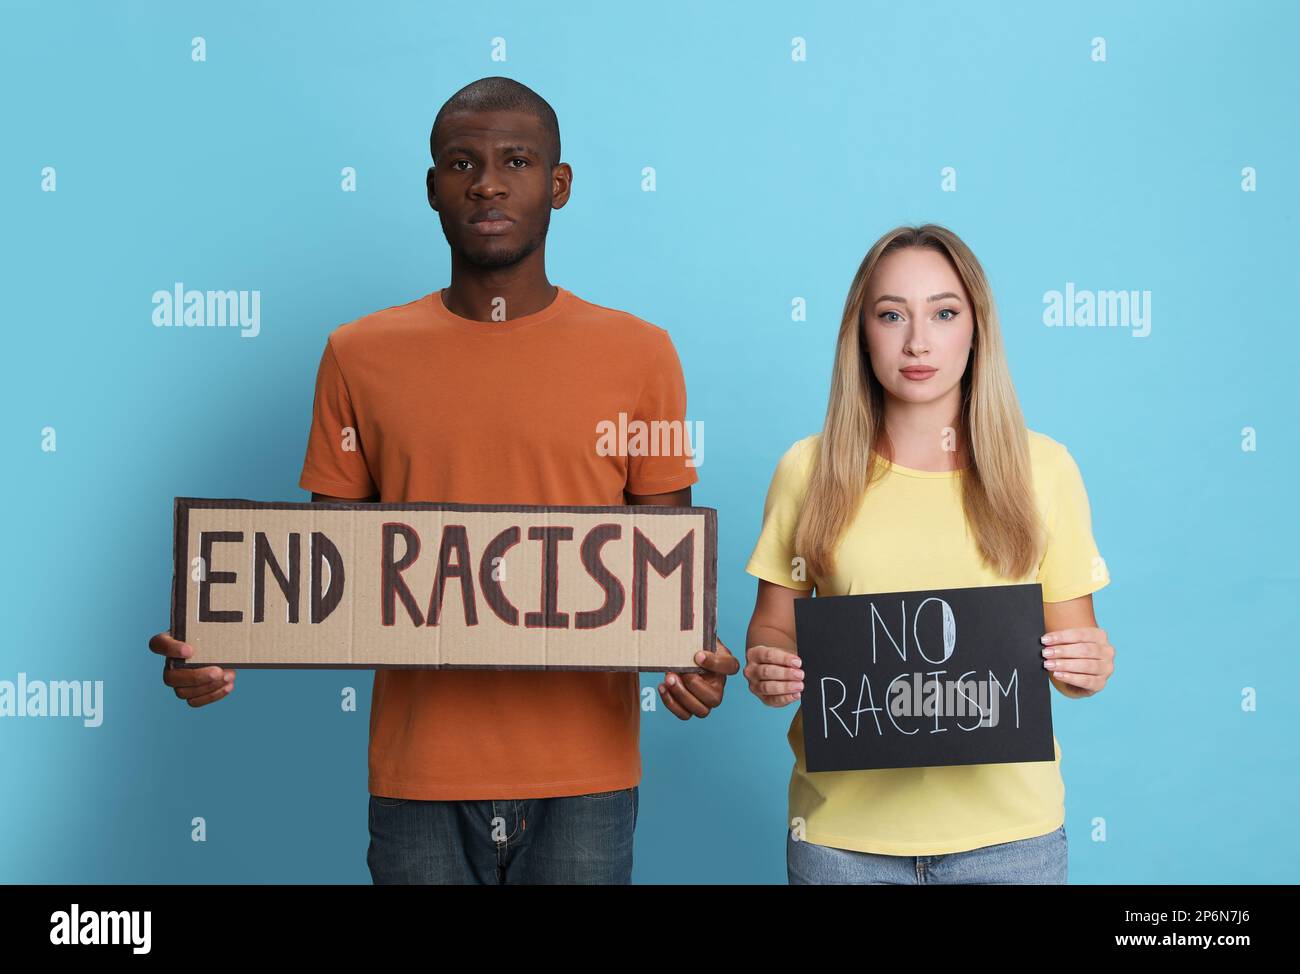 Une jeune femme et un Africain américain tenant des signes avec l'expression mettre fin au racisme sur fond bleu clair Banque D'Images